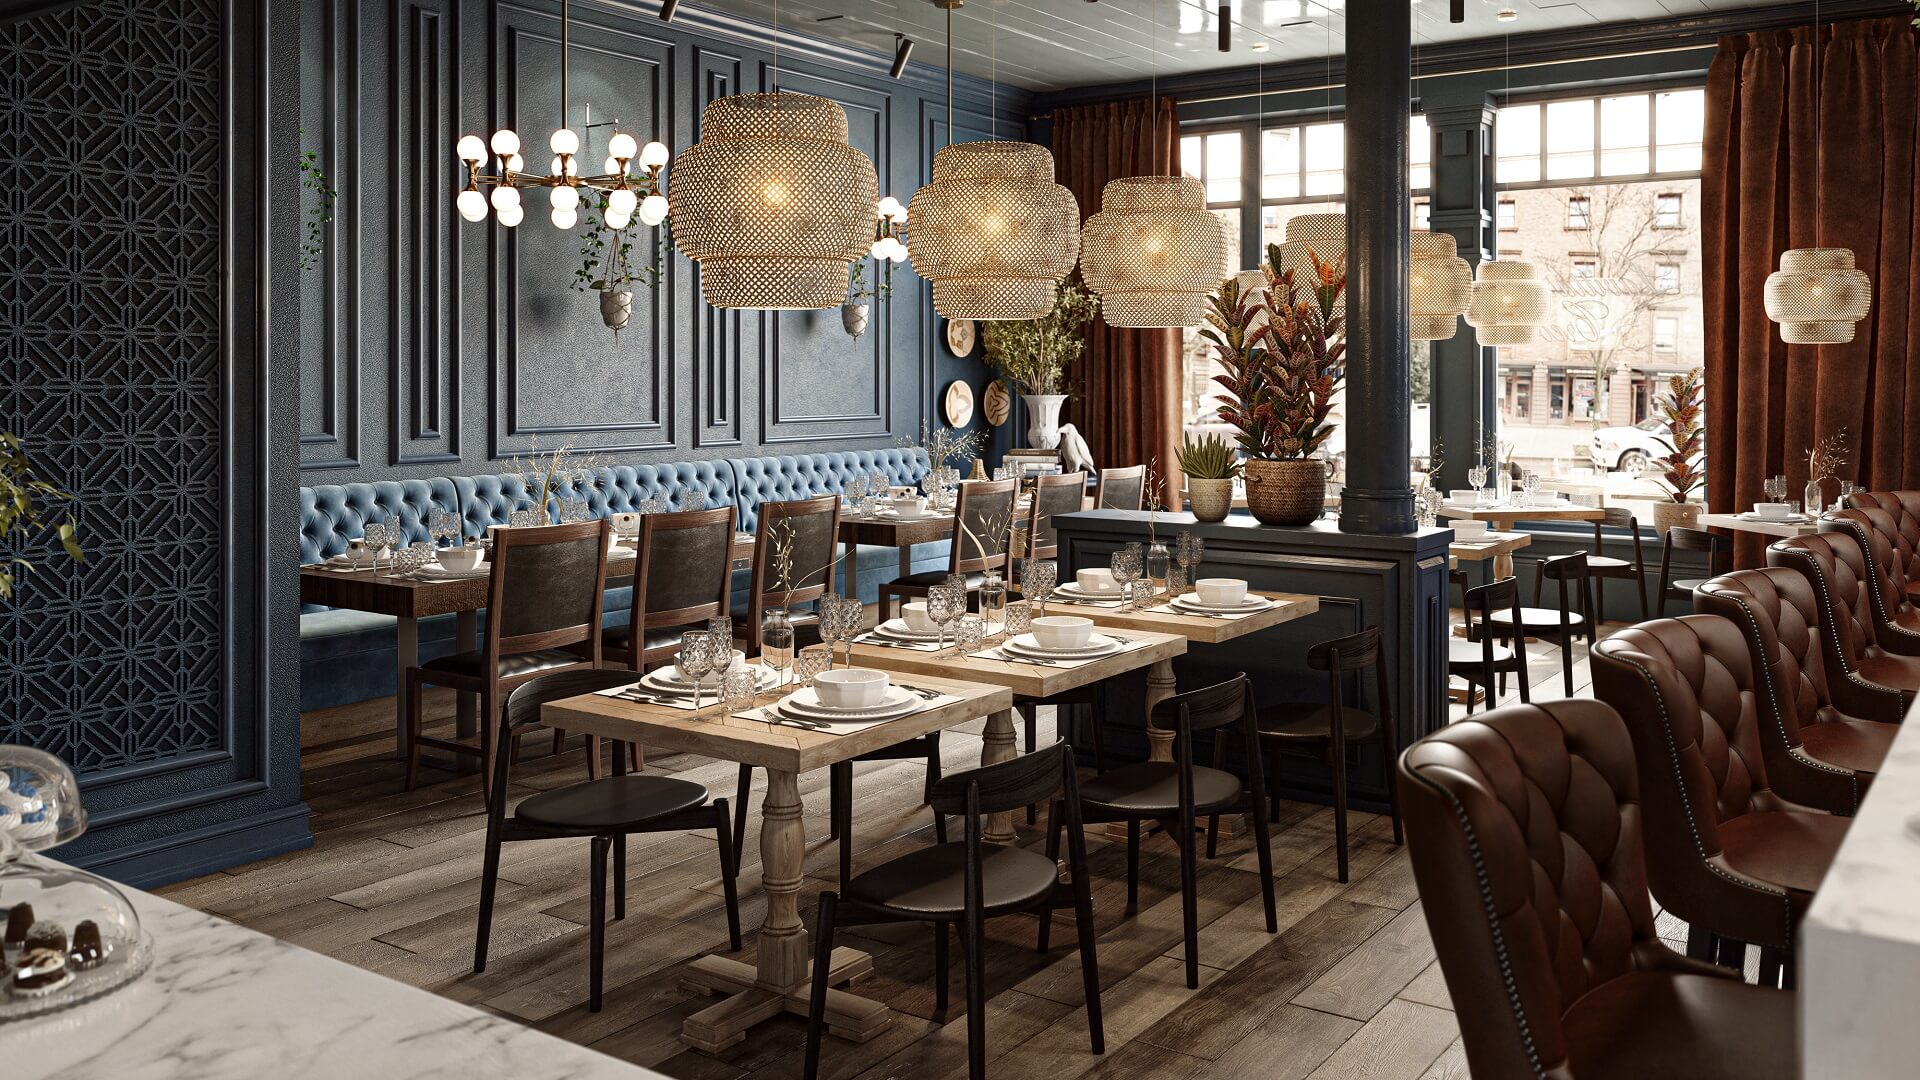 Photorealistic Restaurant Interior Design CGI